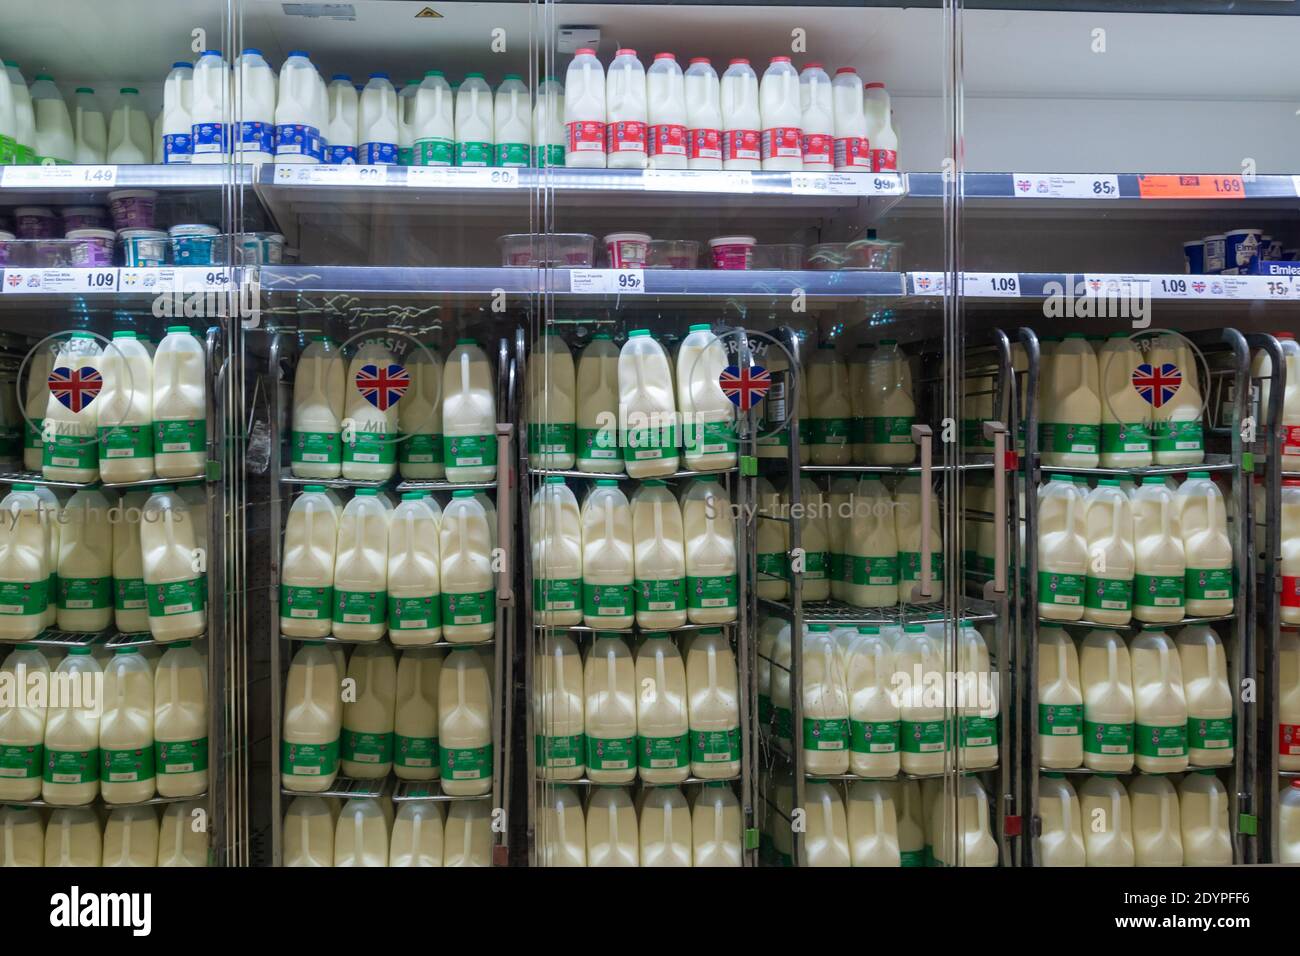 12-27-2020 Portsmouth, Hampshire, UK UN supermercato frigorifero che immagazzina cartoni di varie dimensioni di latte per la vendita Foto Stock